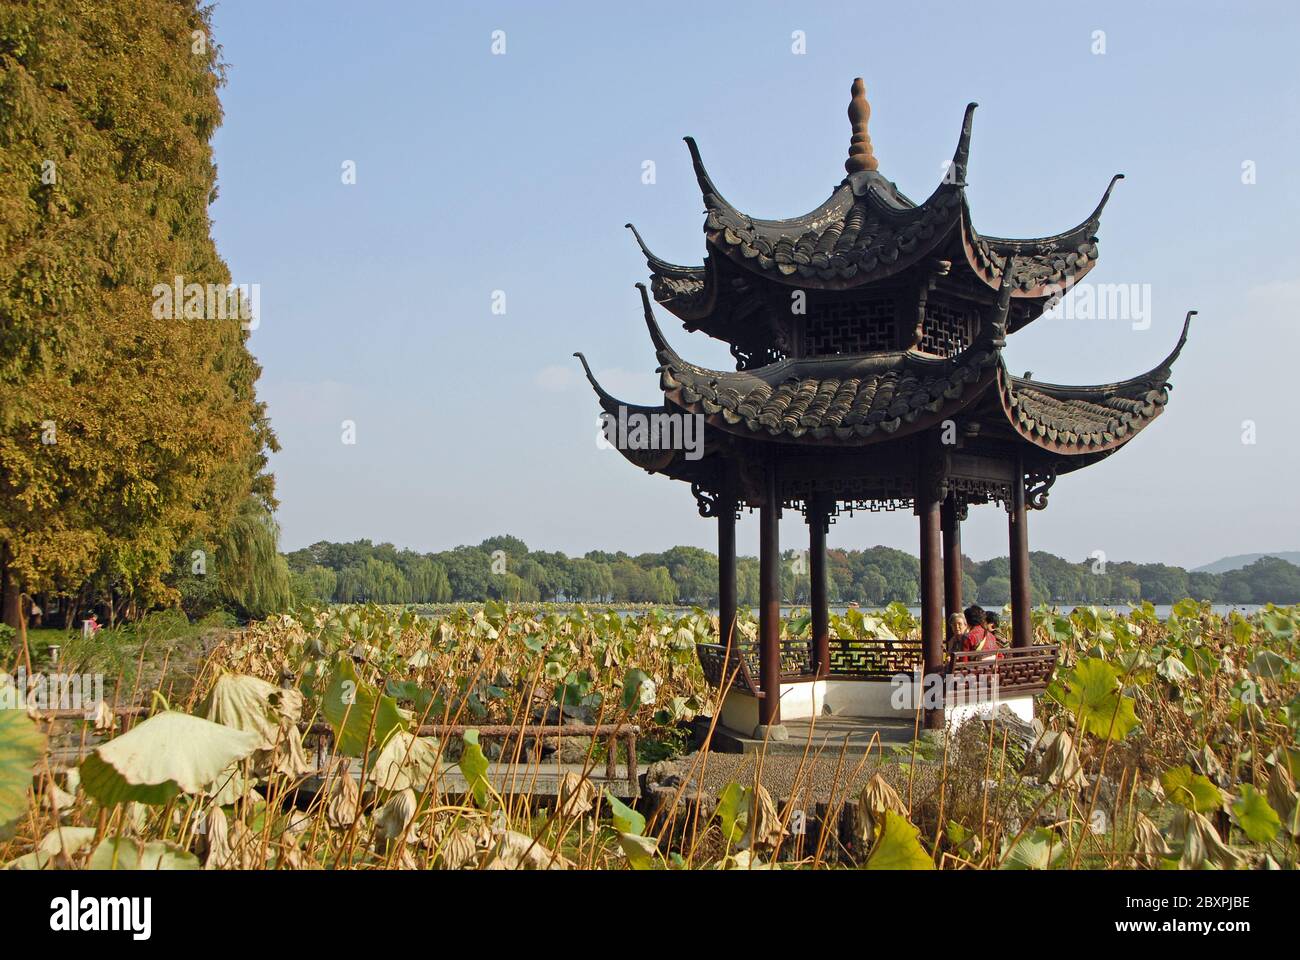 West Lake (Xi Hu) in Hangzhou, Zhejiang Province, China. A pavilion at the Zhanbilou Restaurant by West Lake, Hangzhou. Stock Photo